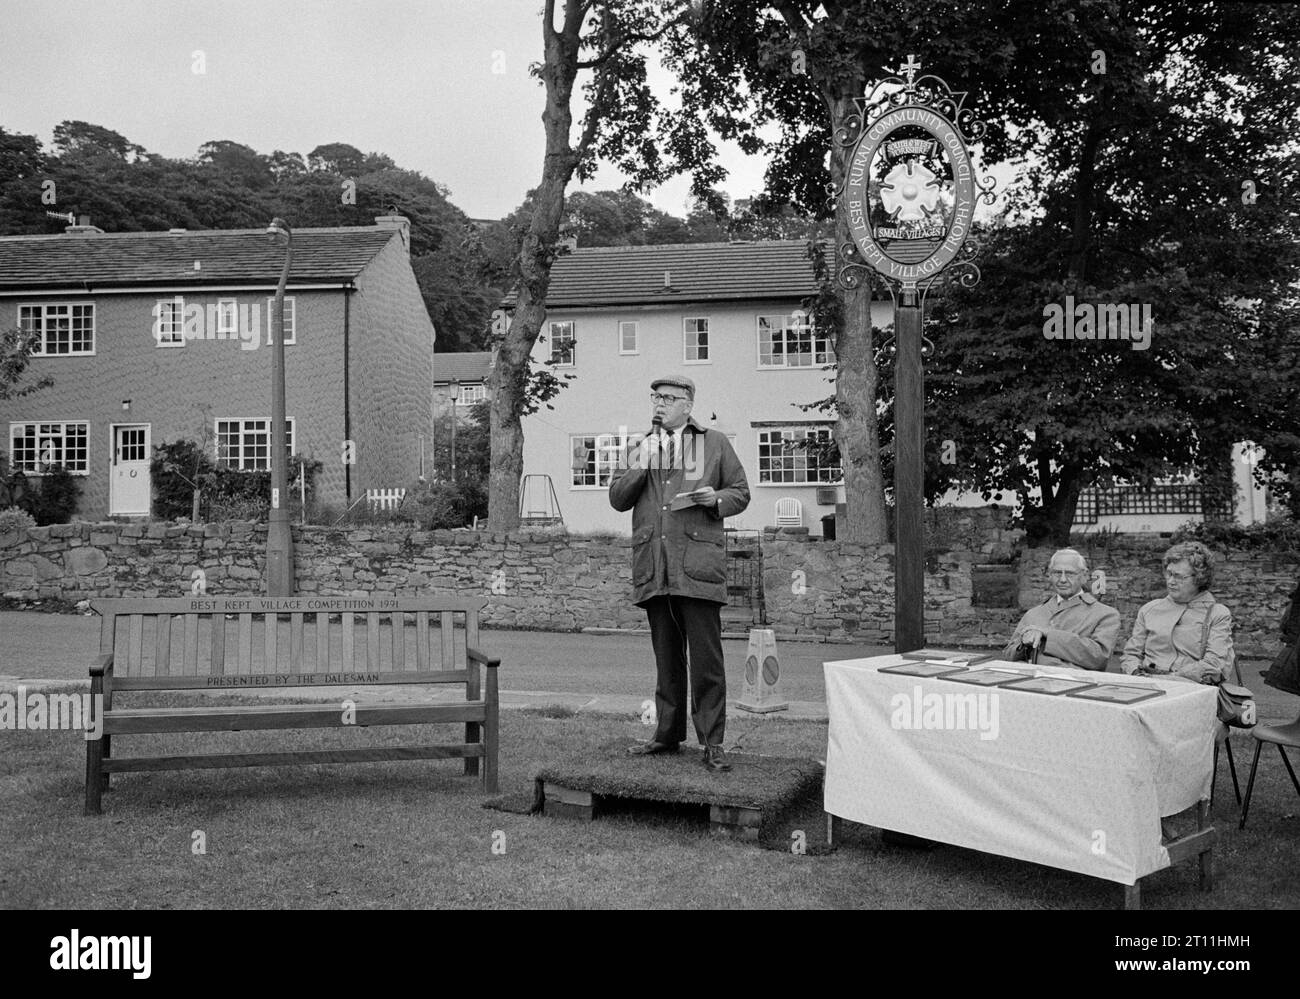 Der Local Councillor kündigt den bestgehaltenen Dorfgewinner von 1991 an: Micklethwaite, Bingley, West Yorkshire. Organisiert vom Dalesman Magazin. Stockfoto